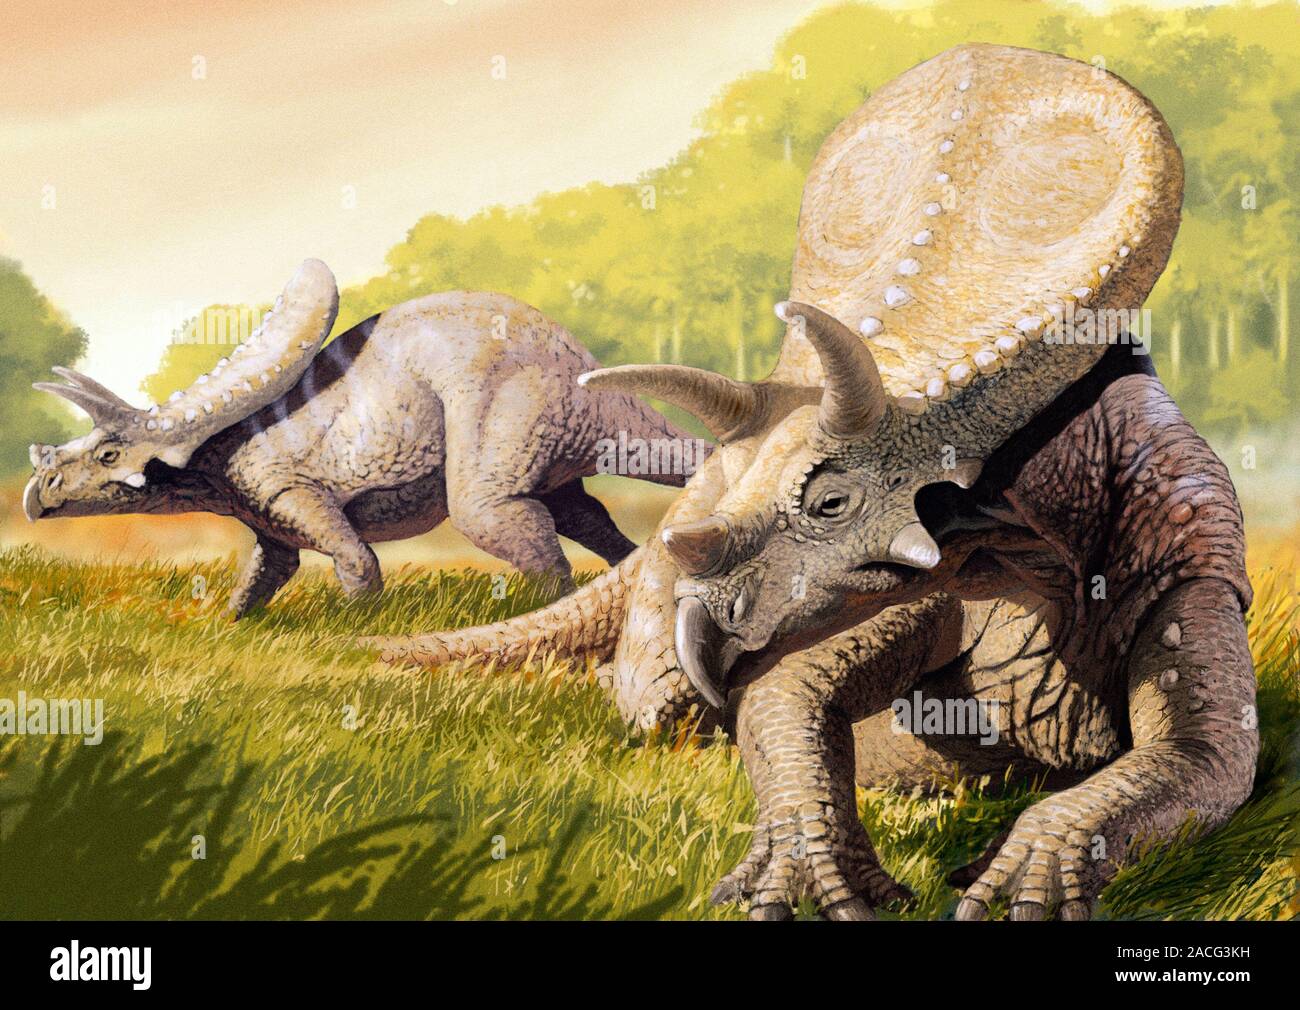 Torosaurus dinosaurio. Ilustración de un par de Torosaurus dinosaurios.  Torosaurus ('lagarto perforado